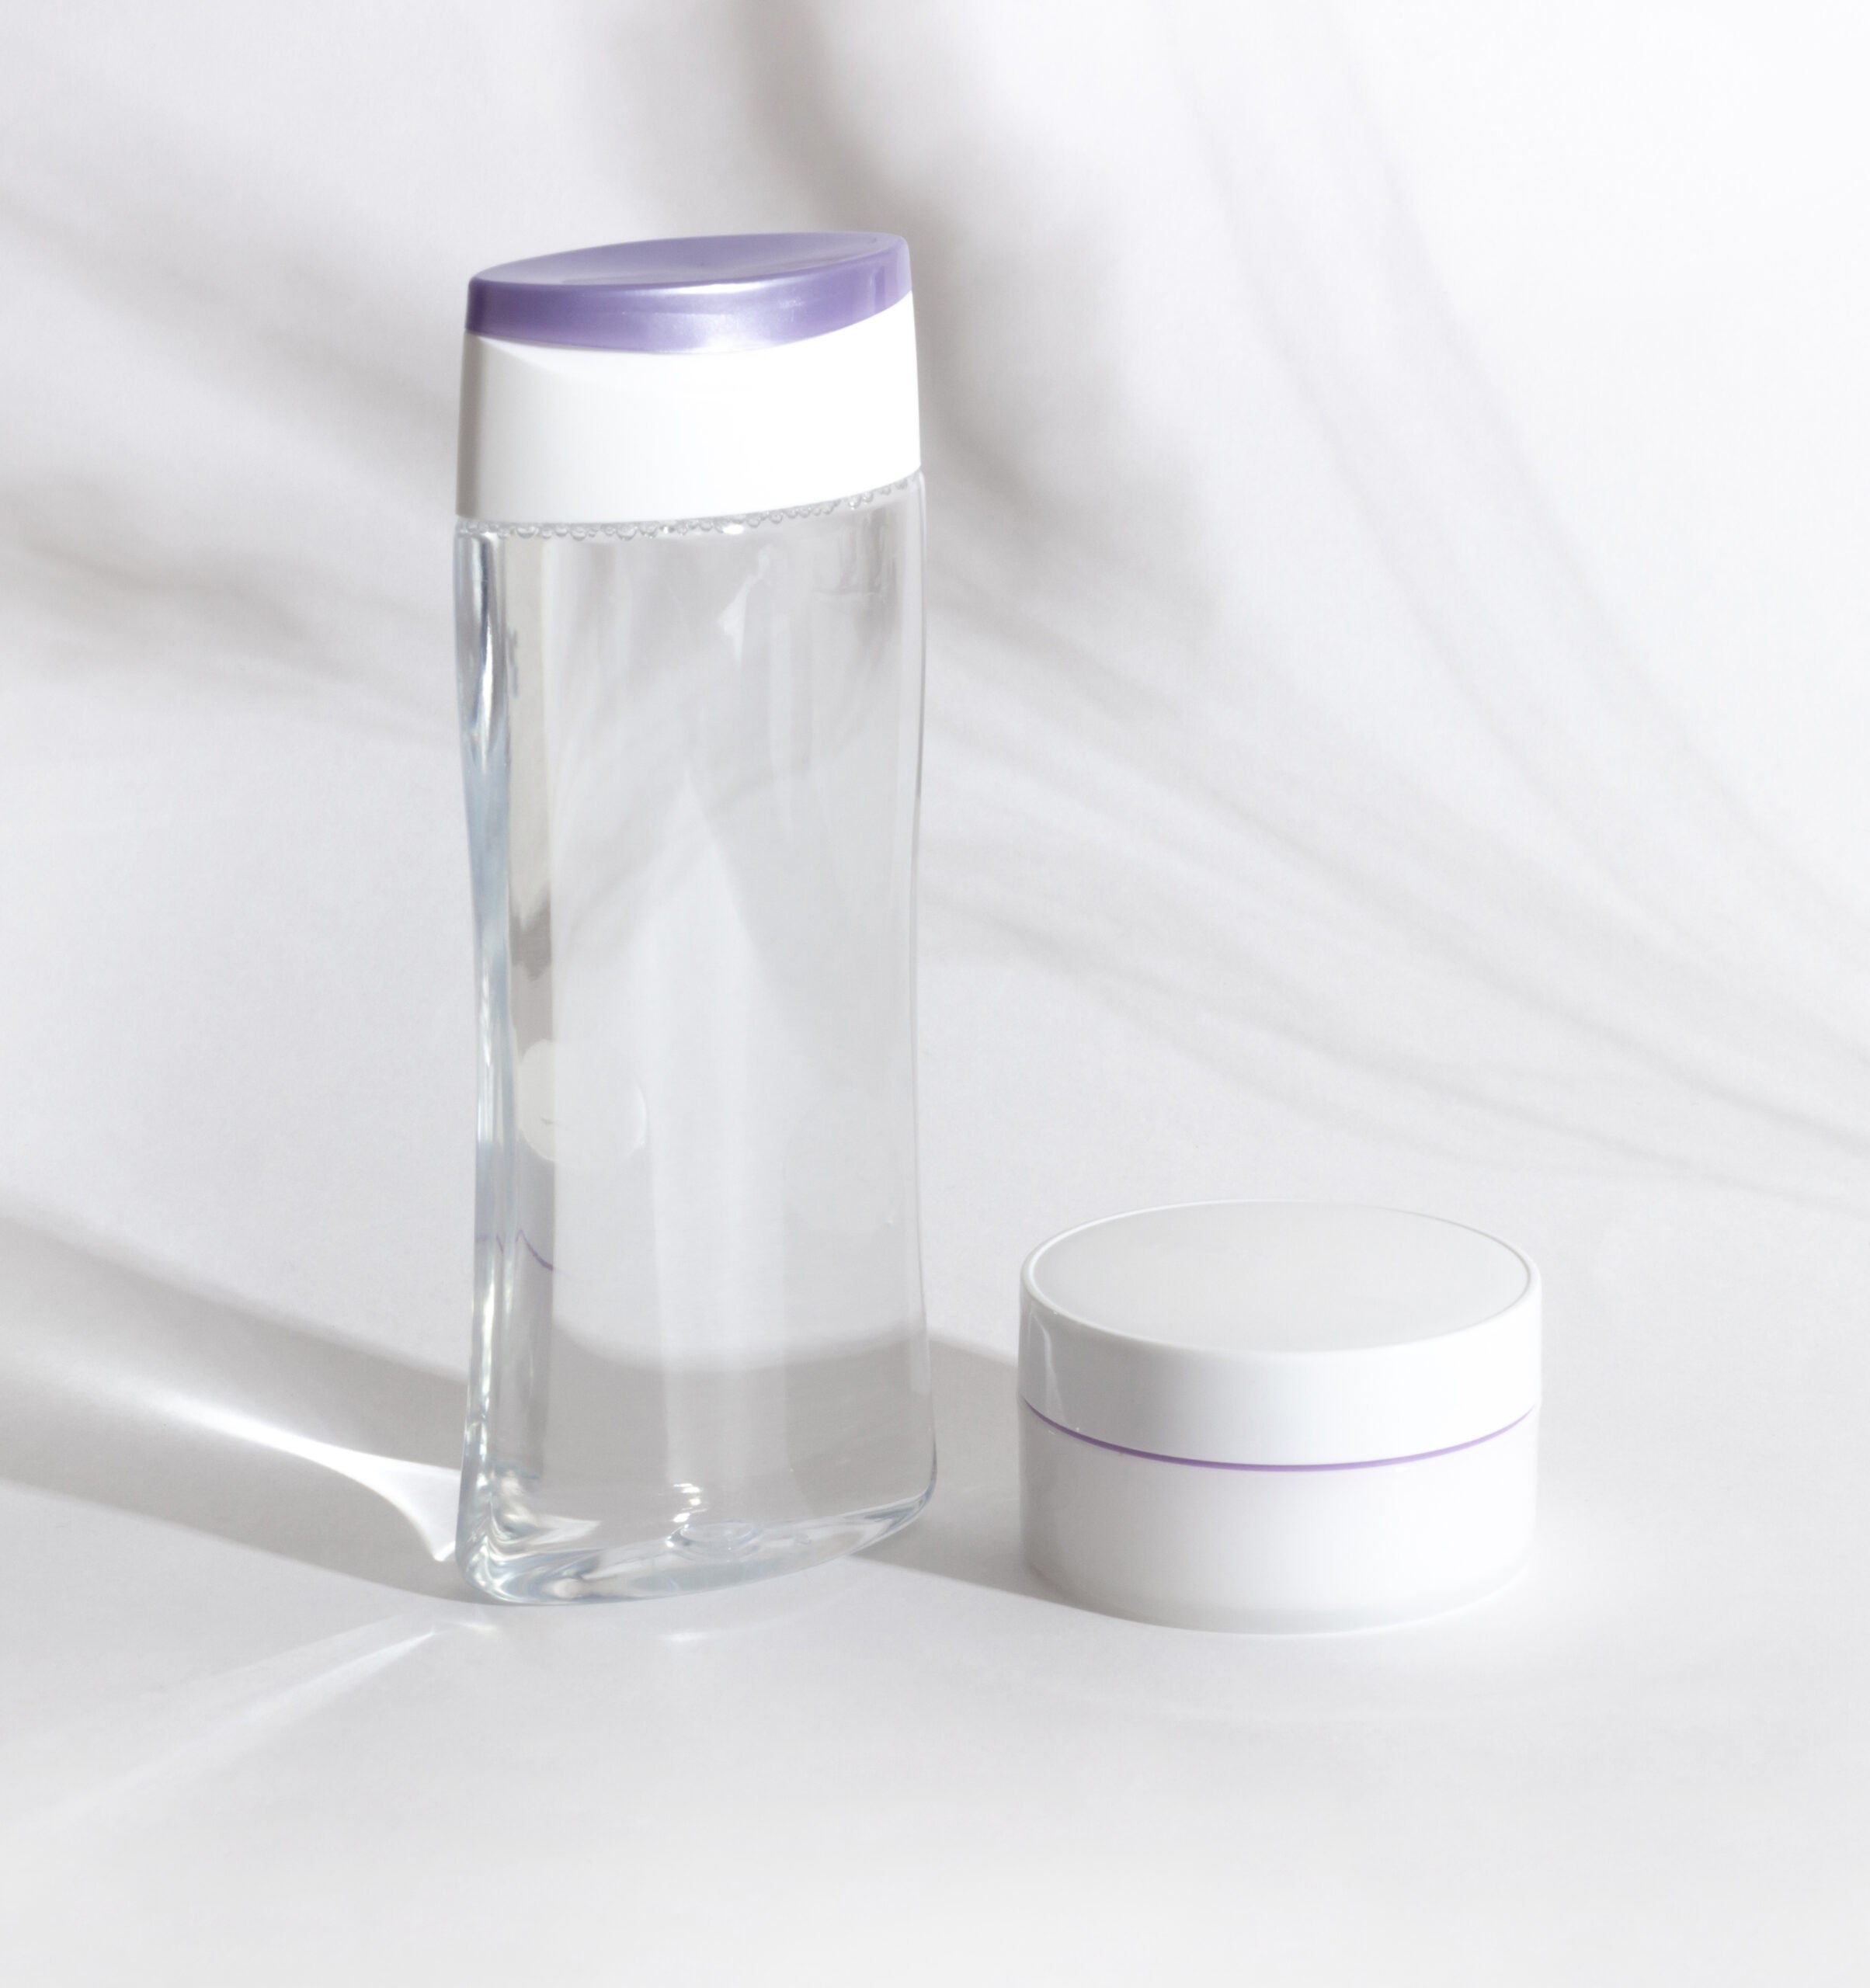 Product Comparison - Micellar Water Vs Foam